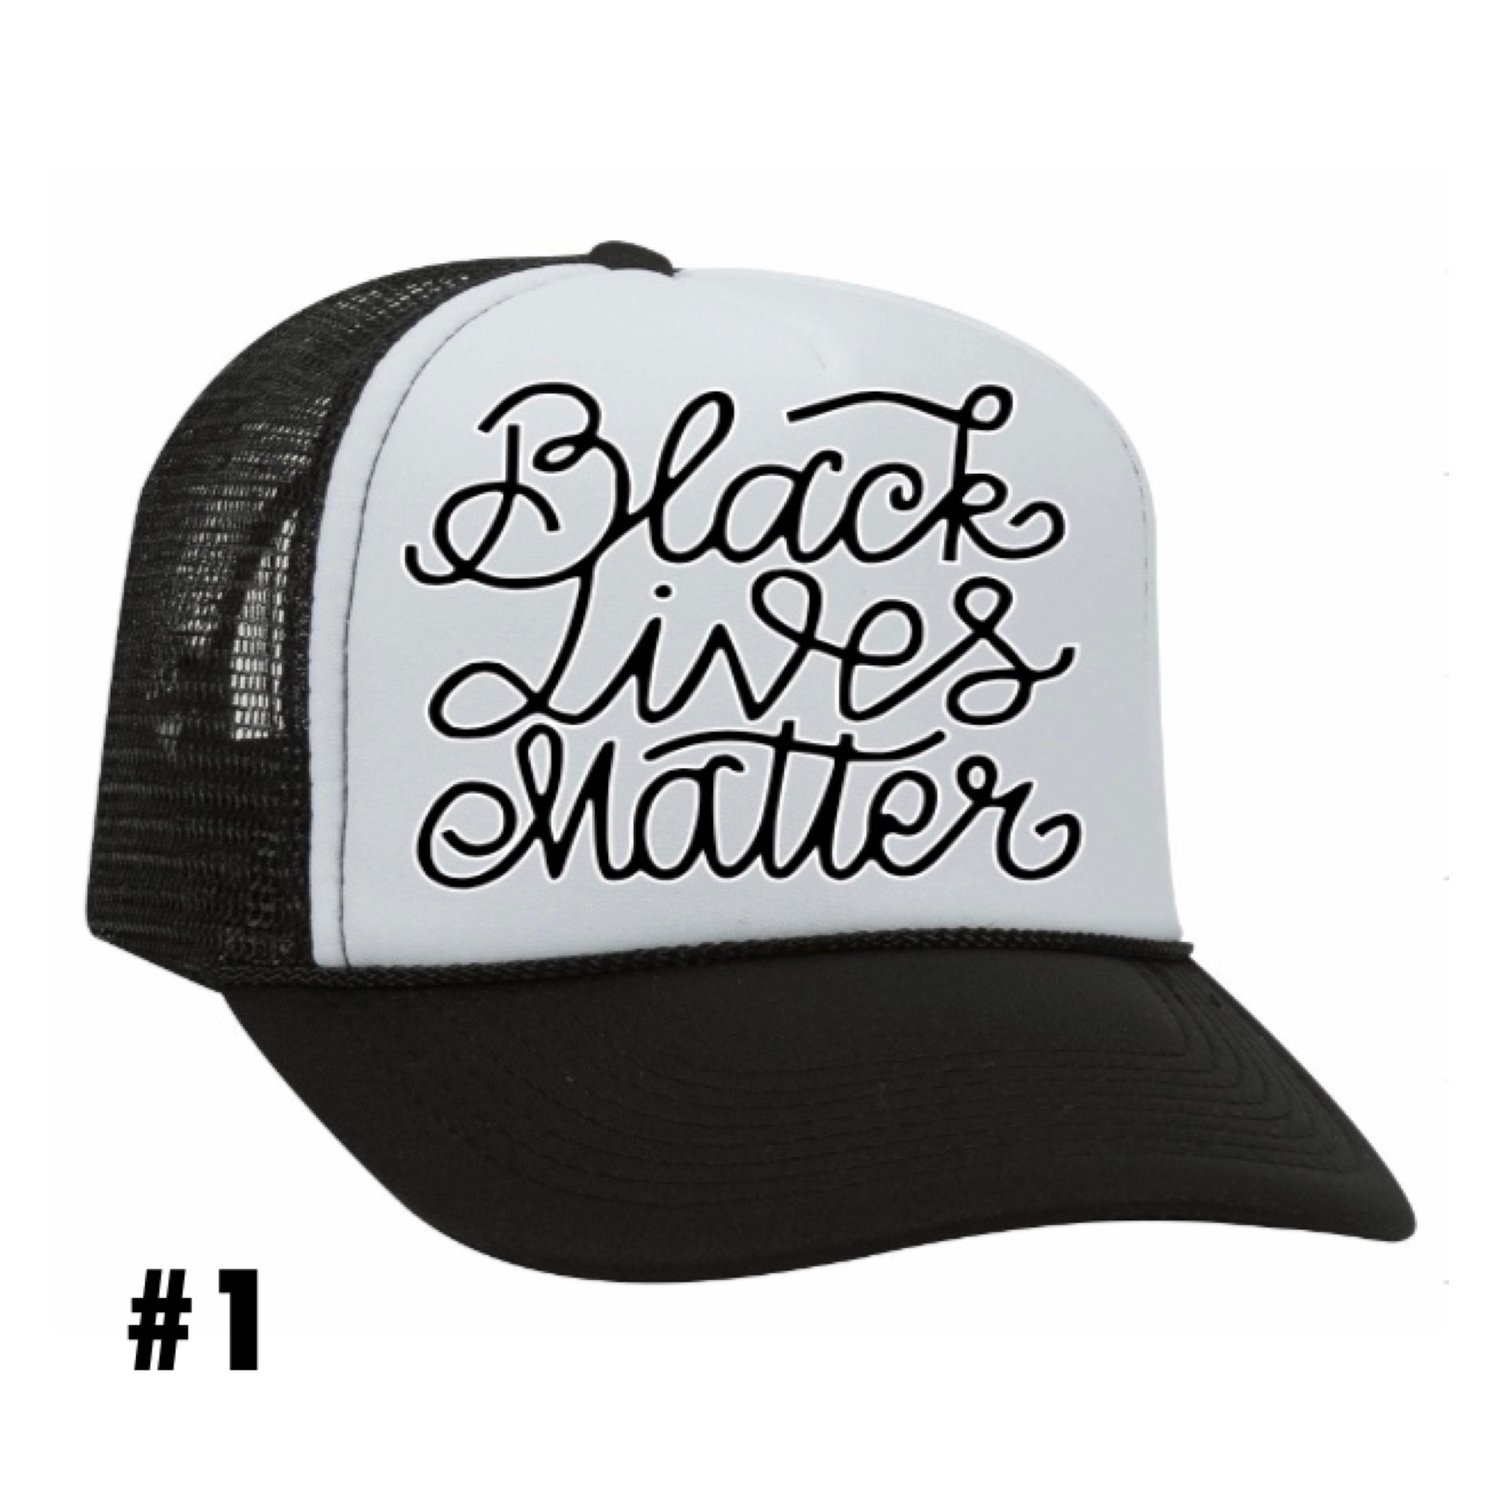 Image of The “Black Lives Matter” Hat 